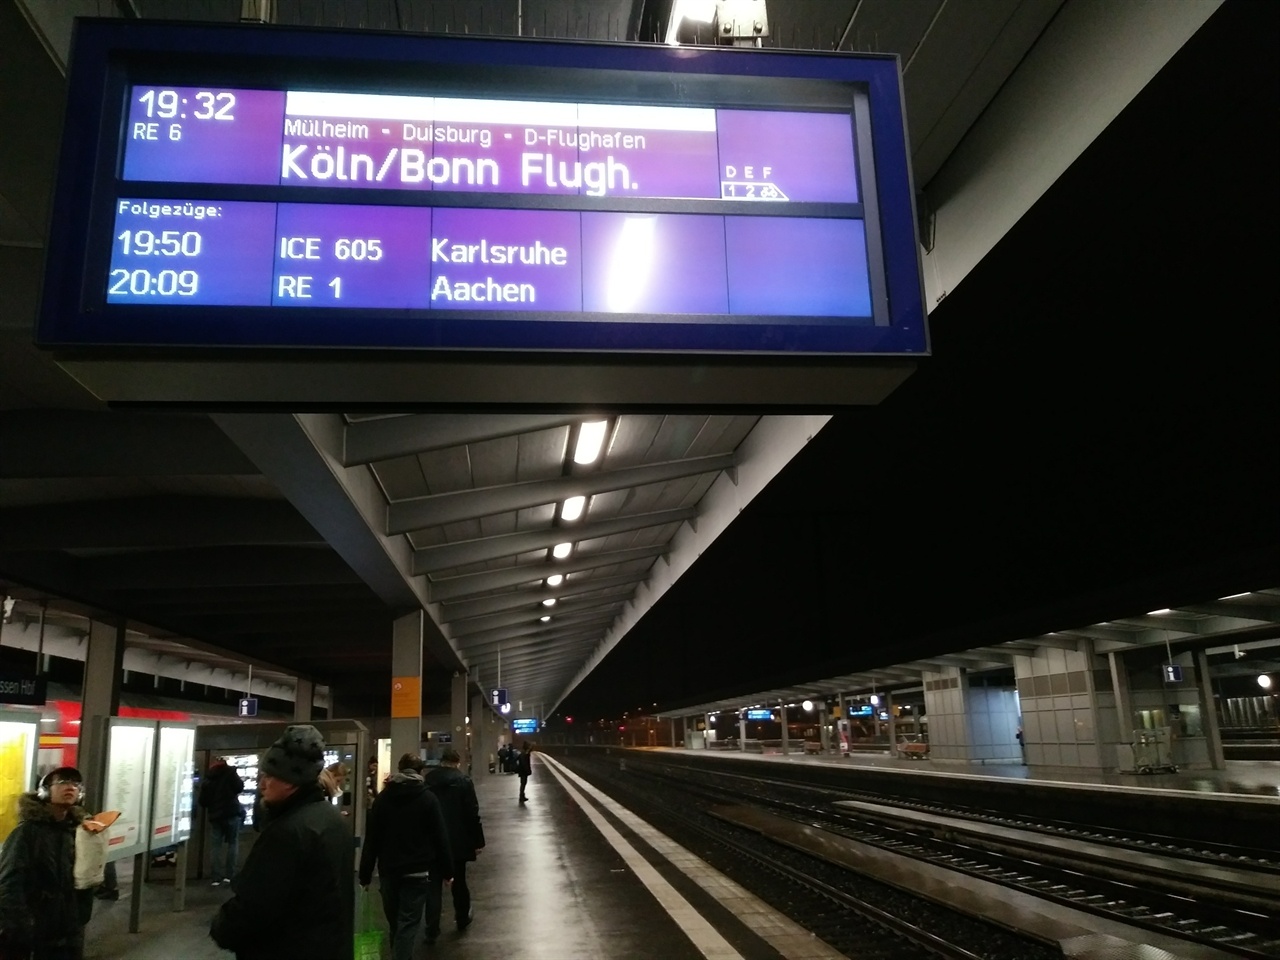 기본적인 독일어를 모르면 기차를 이용하는 데 다소 불편하다. 도시의 이름은 물론 안내판도 승차권도 죄다 독일어로만 적혀있기 때문이다. 예컨대, 사진 속 'Flugh'는 'Flughhafen'의 줄임말로, 공항이라는 뜻이다. 'Airport'를 병기하지 않은 그들의 배짱(?)이 놀랍다.